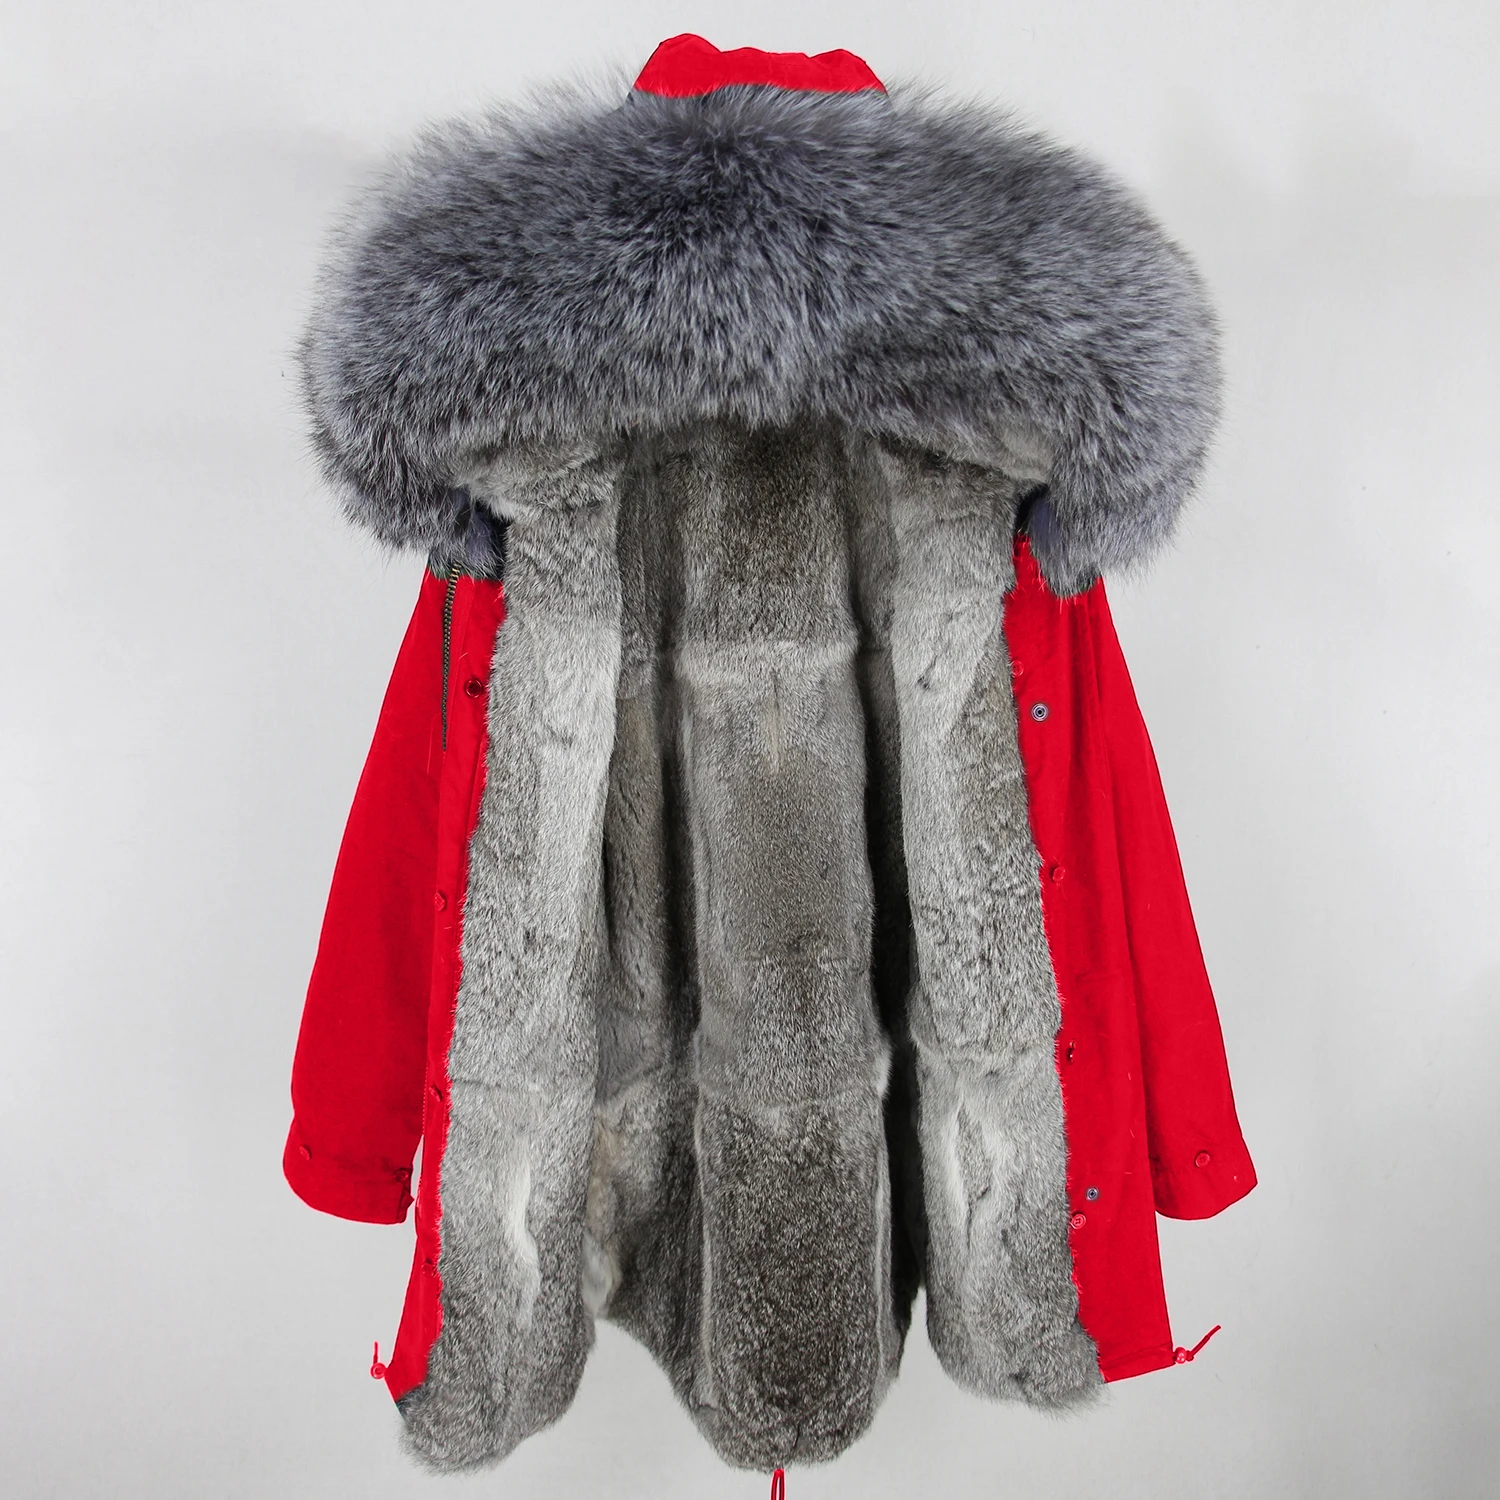 OFTBUY длинная парка зимняя куртка женская парка пальто из натурального меха енота капюшон Подкладка из натурального кроличьего меха Роскошная уличная одежда - Цвет: red silver